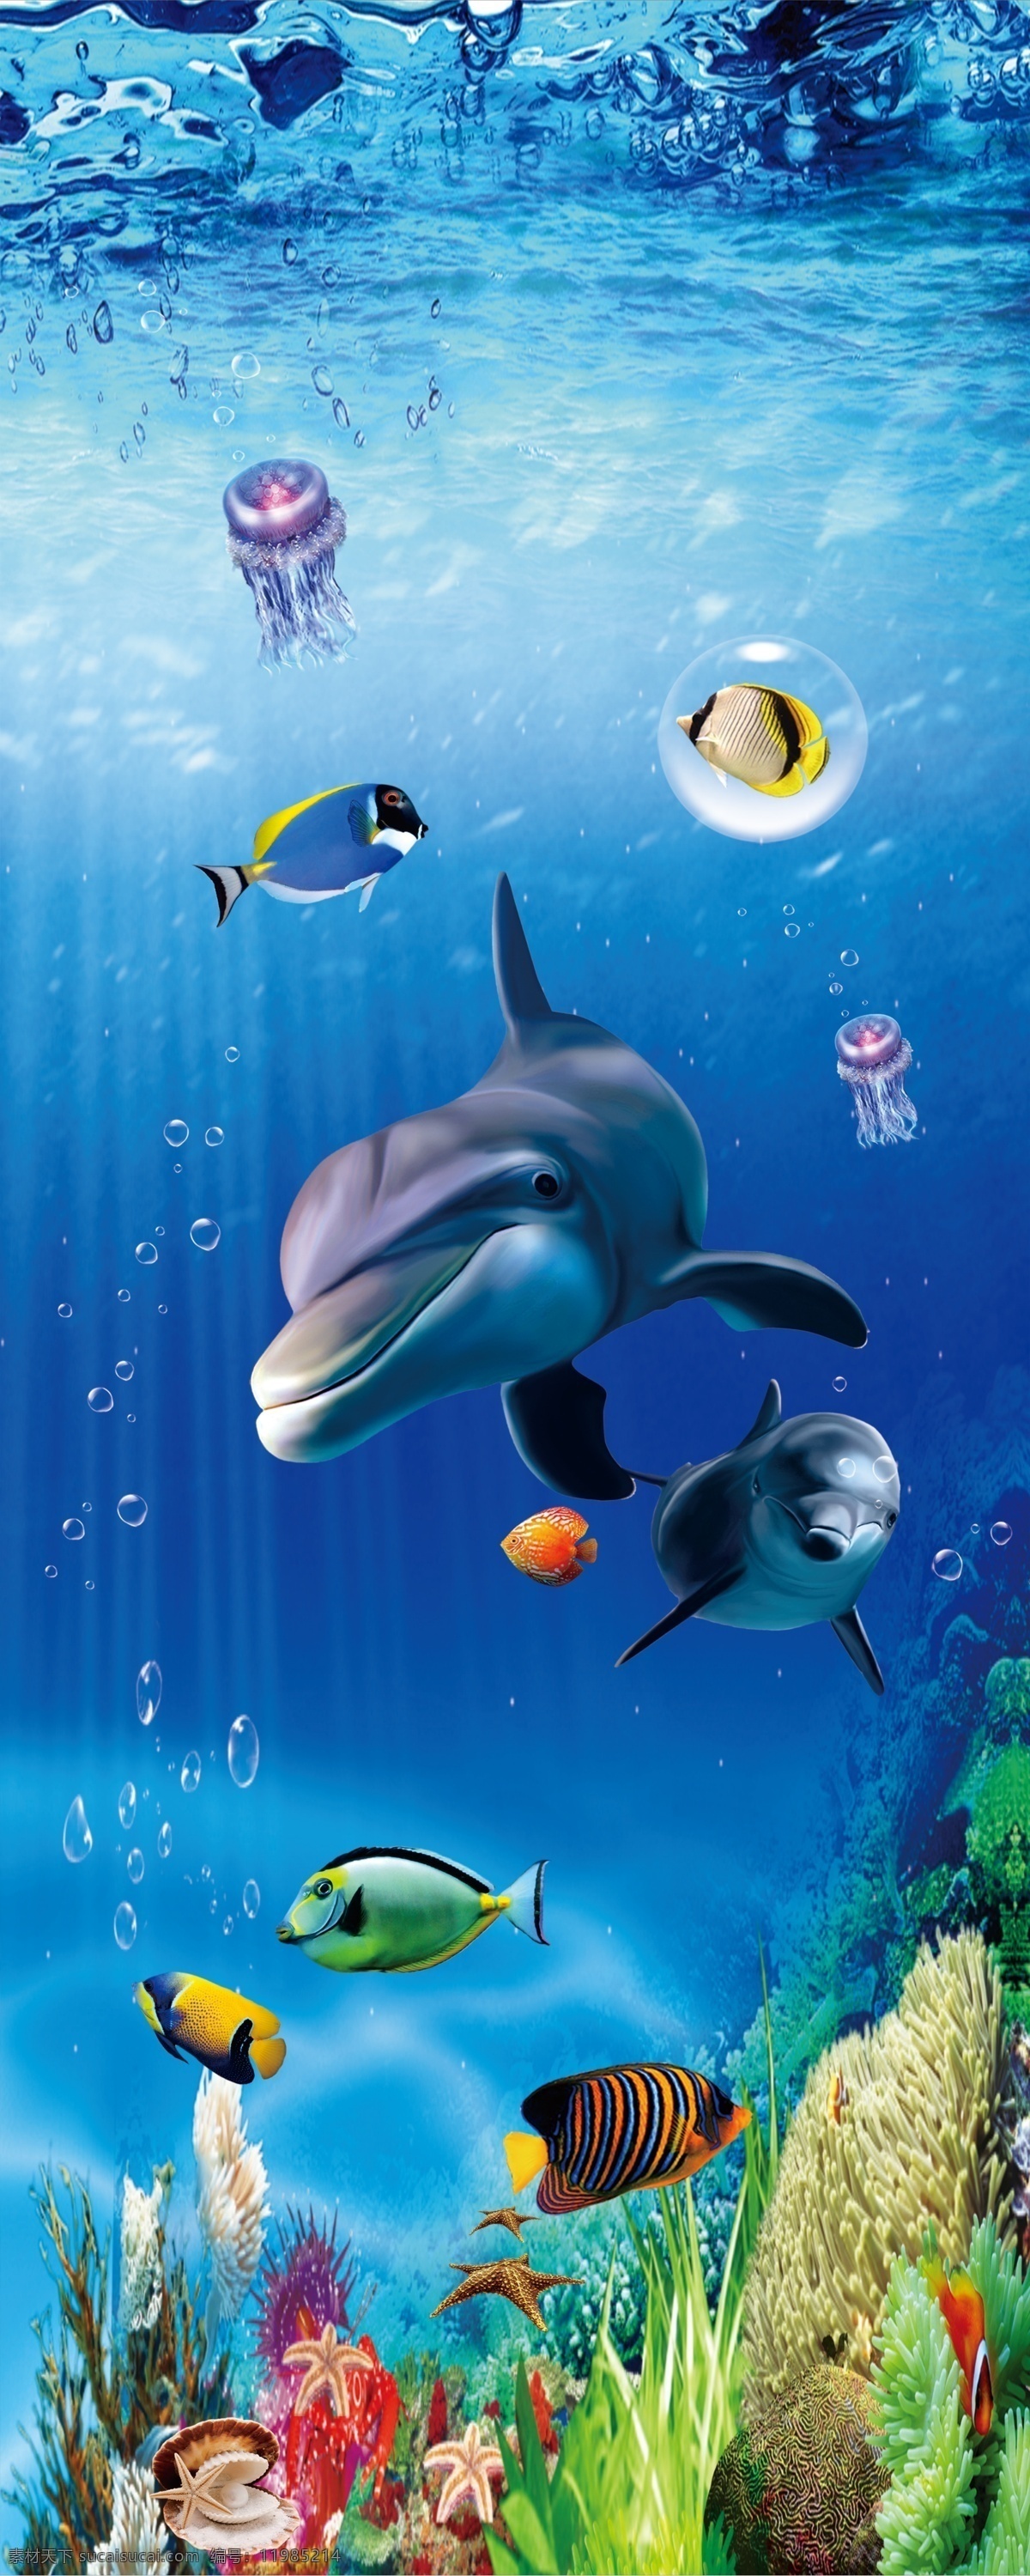 竖 版 海底 世界 分层 海豚 底世界 3d海底世界 梦幻海底 海底素材 海底背景墙 竖版